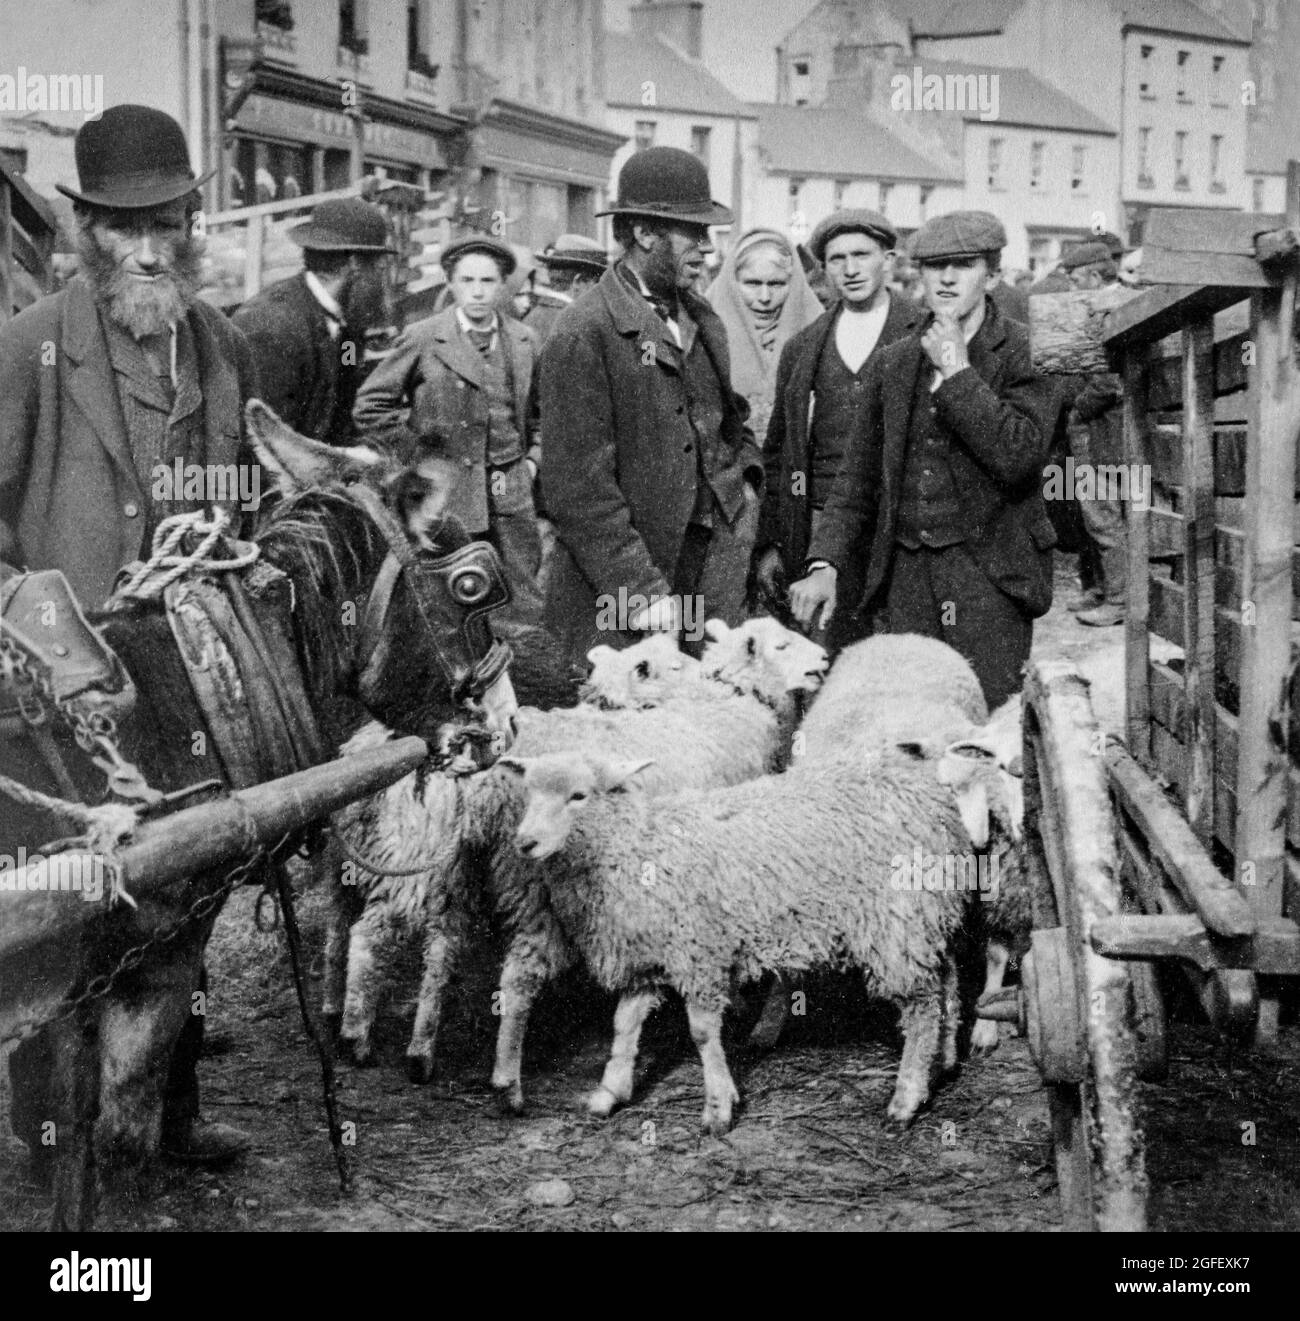 Une photographie du début du XXe siècle des agriculteurs et des habitants de la région lors d'une foire aux moutons qui s'est tenue sur la place du marché, dans la ville de Killarney, dans le comté de Kerry, en Irlande. Banque D'Images